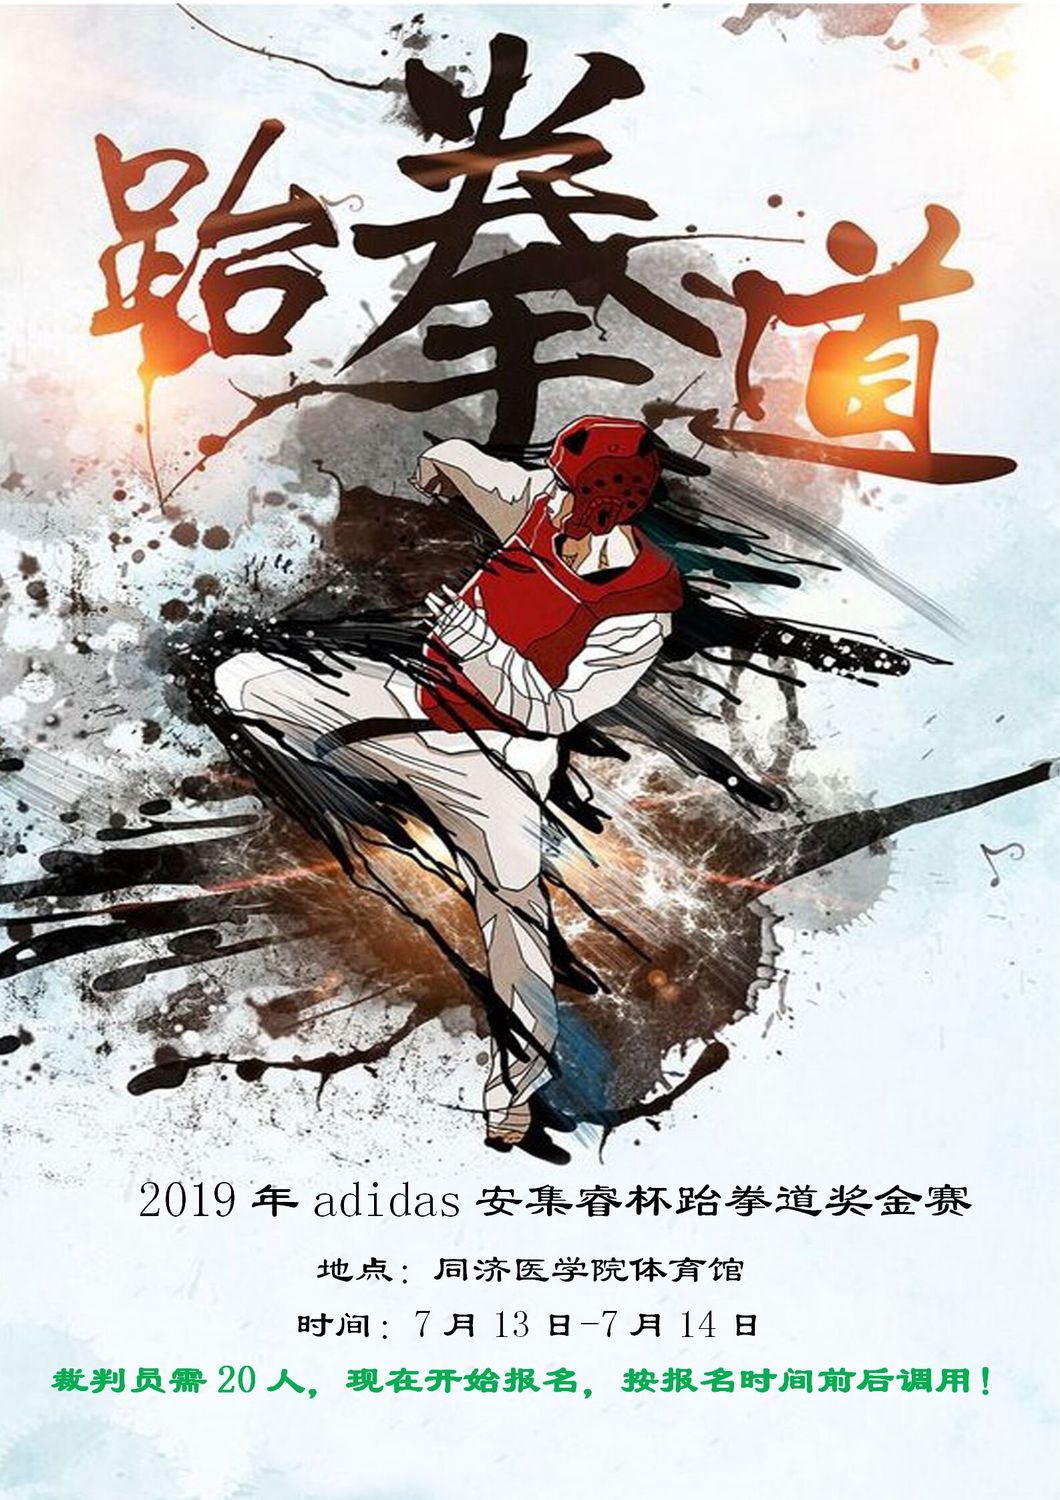 赛事5-2019年adidas安集睿杯跆拳道奖金赛7月13日-7月14日_01.jpg